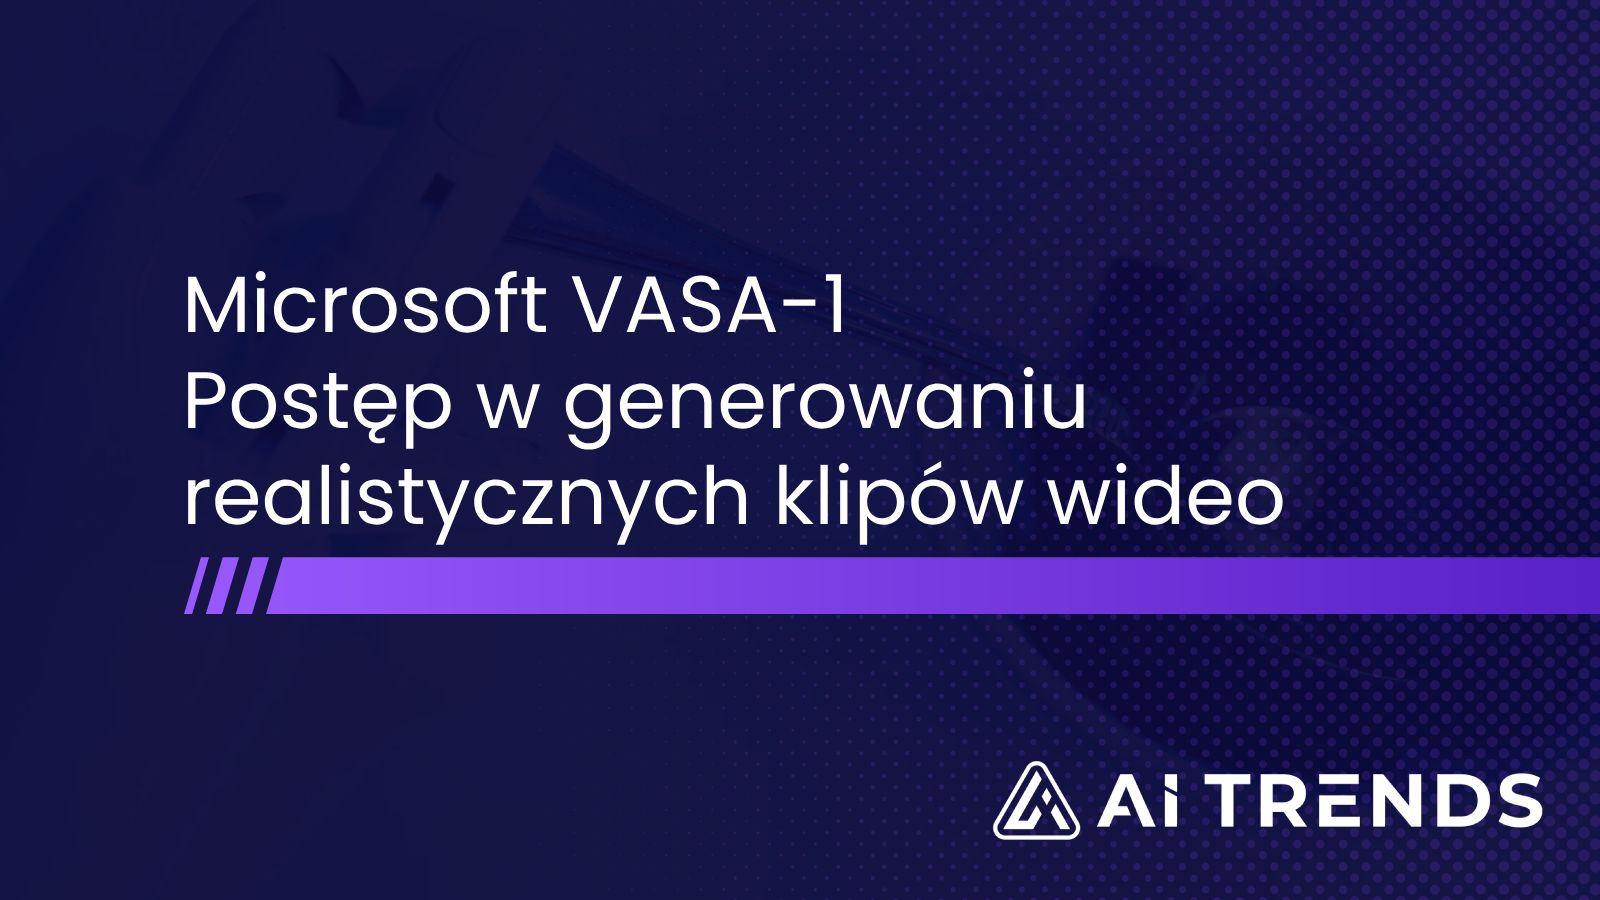 Microsoft VASA-1 – postęp w generowaniu realistycznych klipów wideo